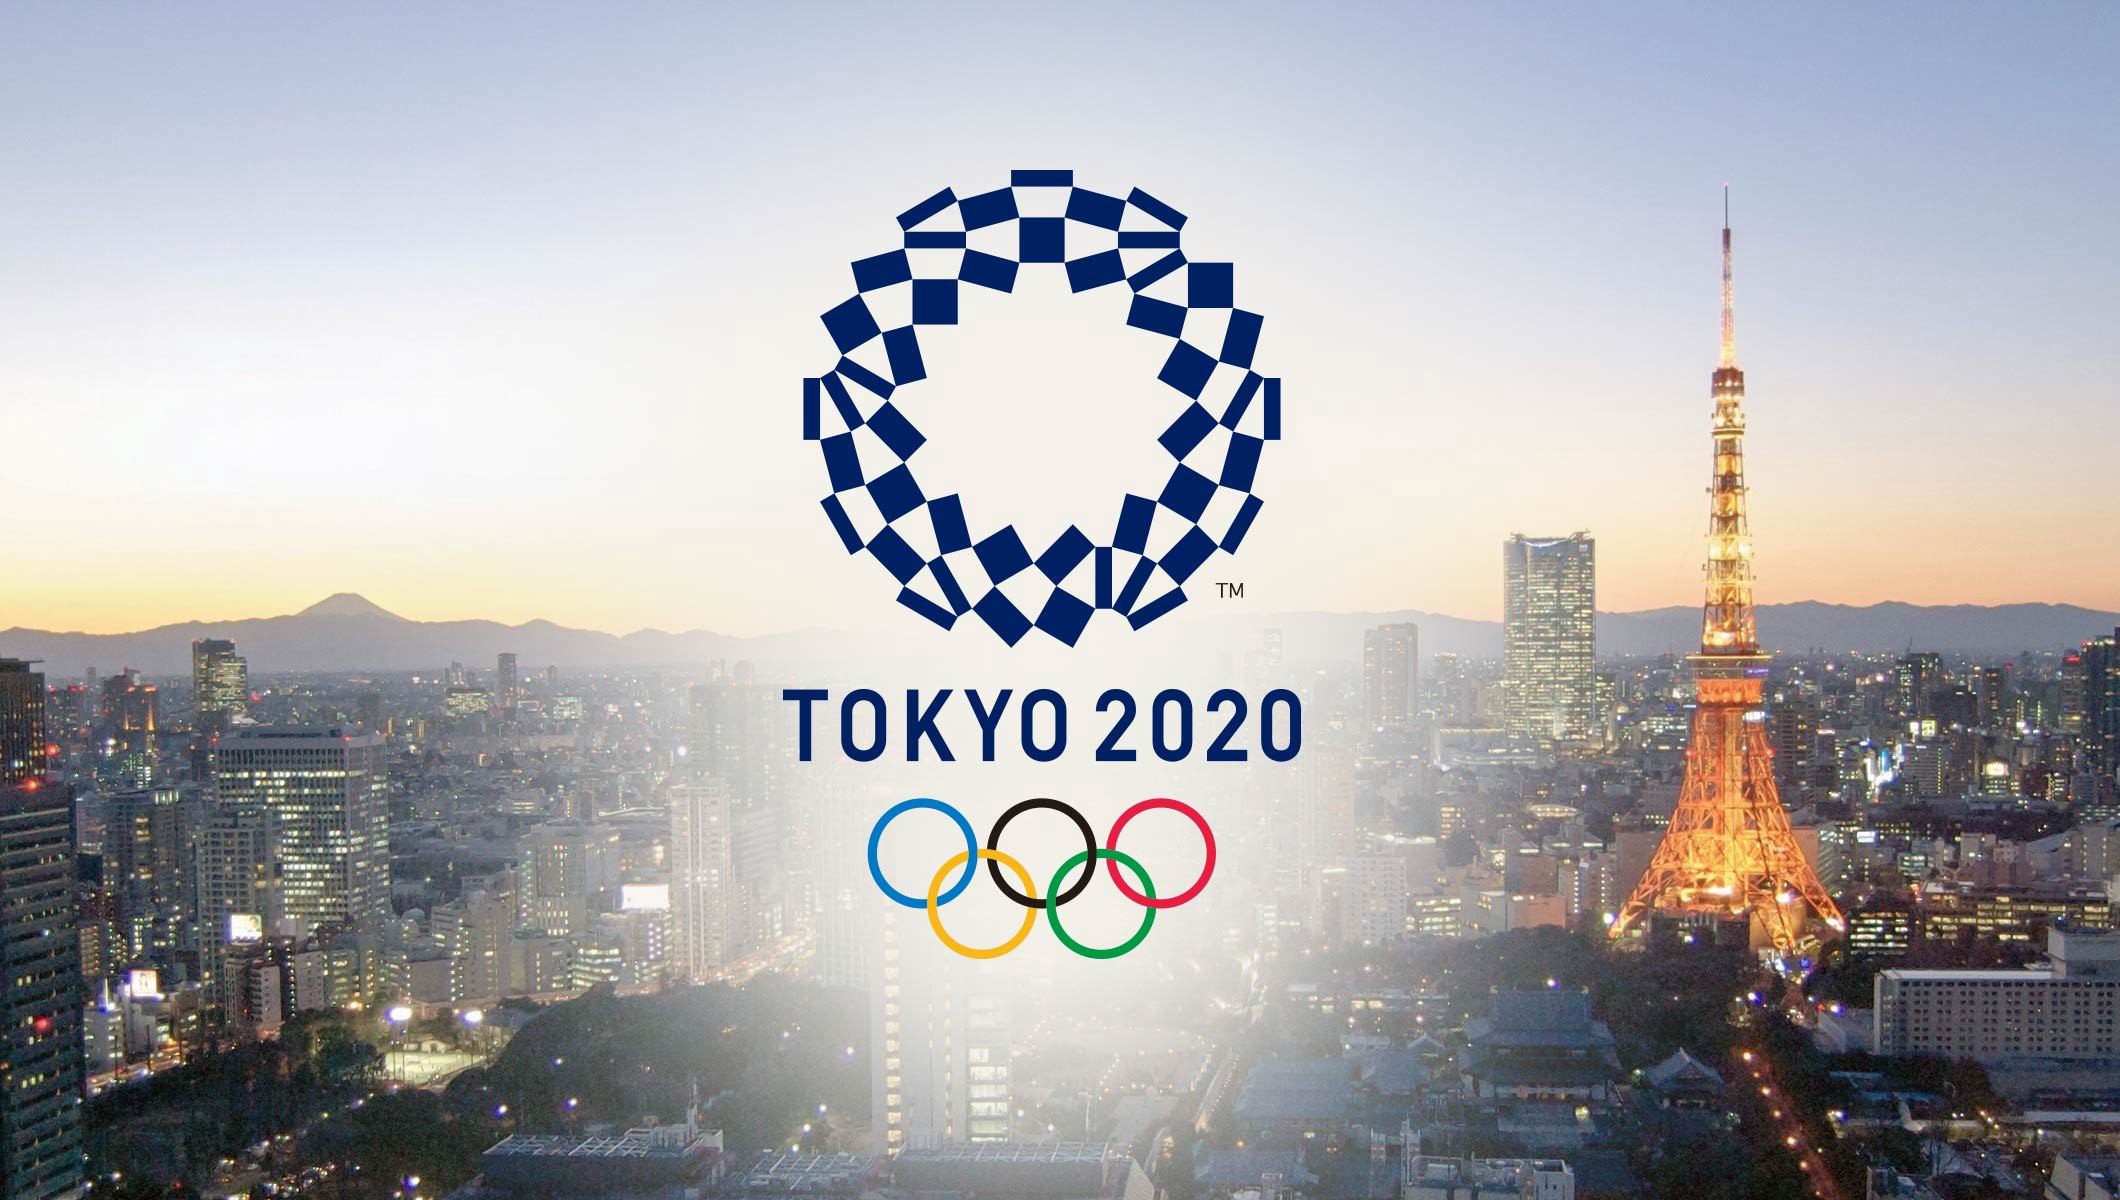 الرياضيون الألمان سعداء بالمشاركة في أولمبياد طوكيو - بوابة الشروق - نسخة  الموبايل